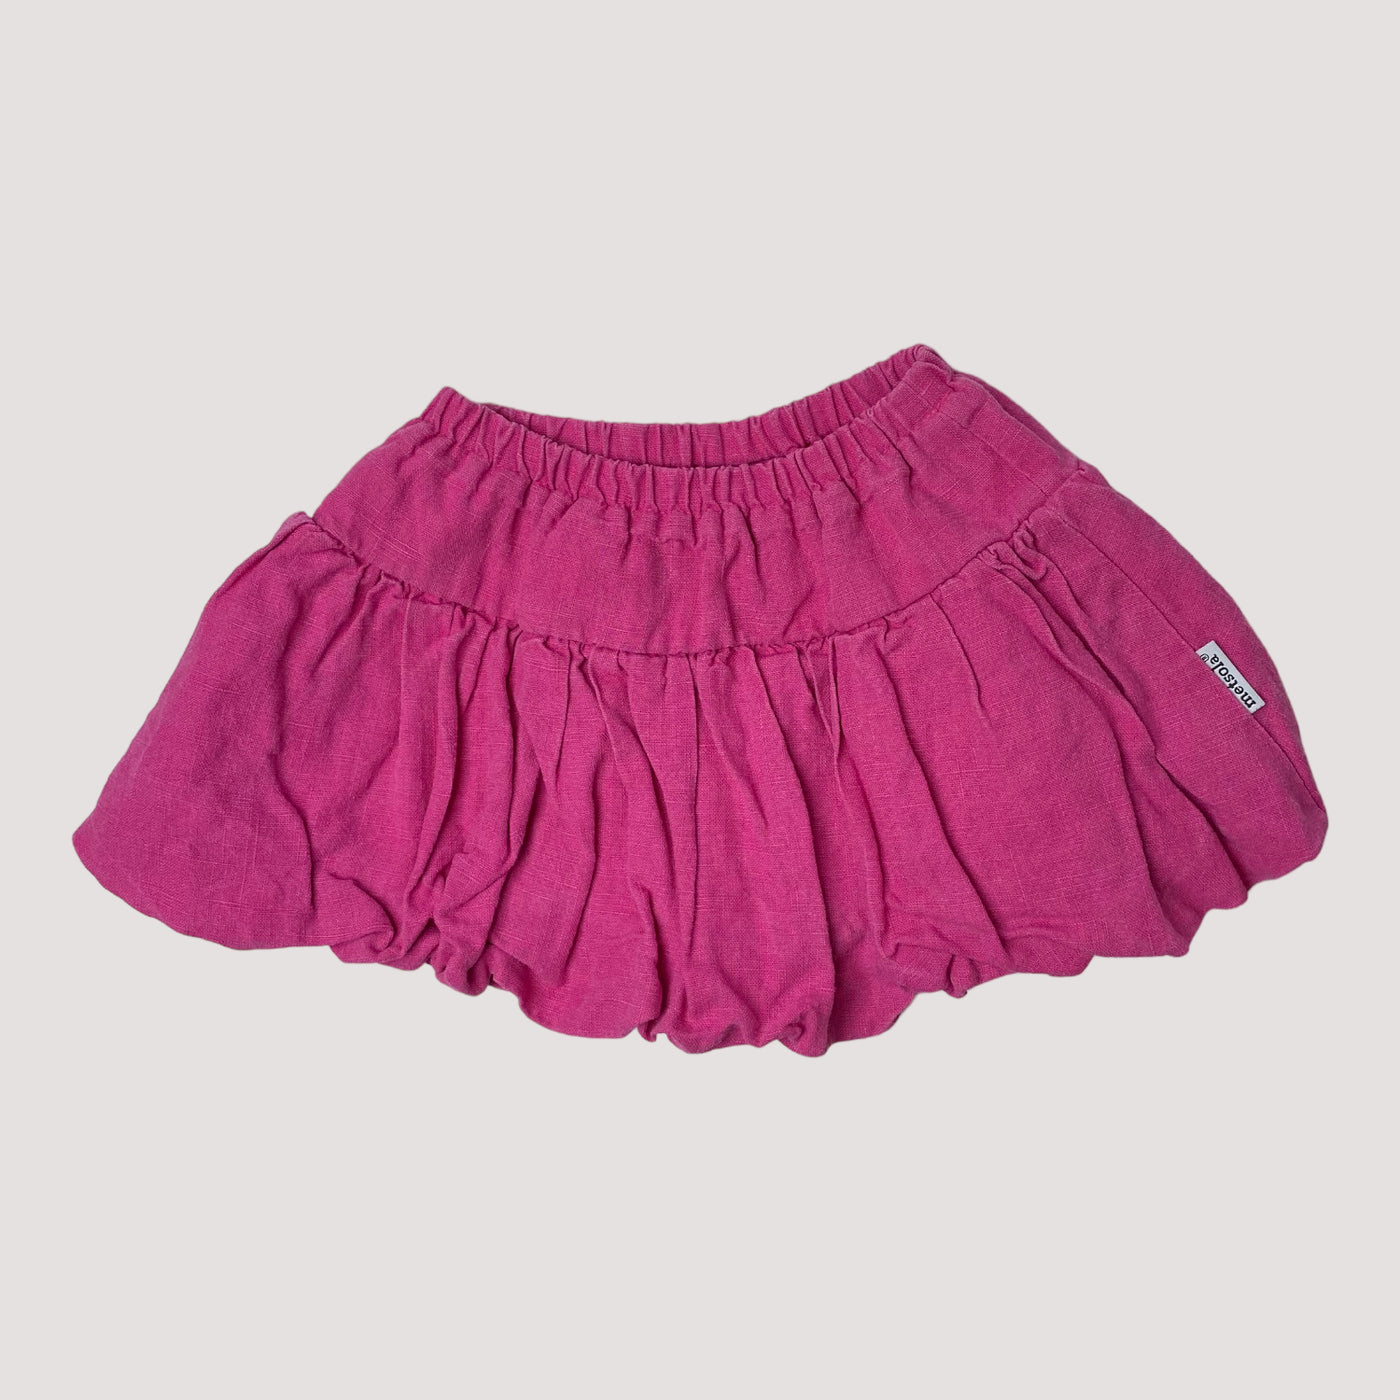 woven skirt, pink | 98/104cm